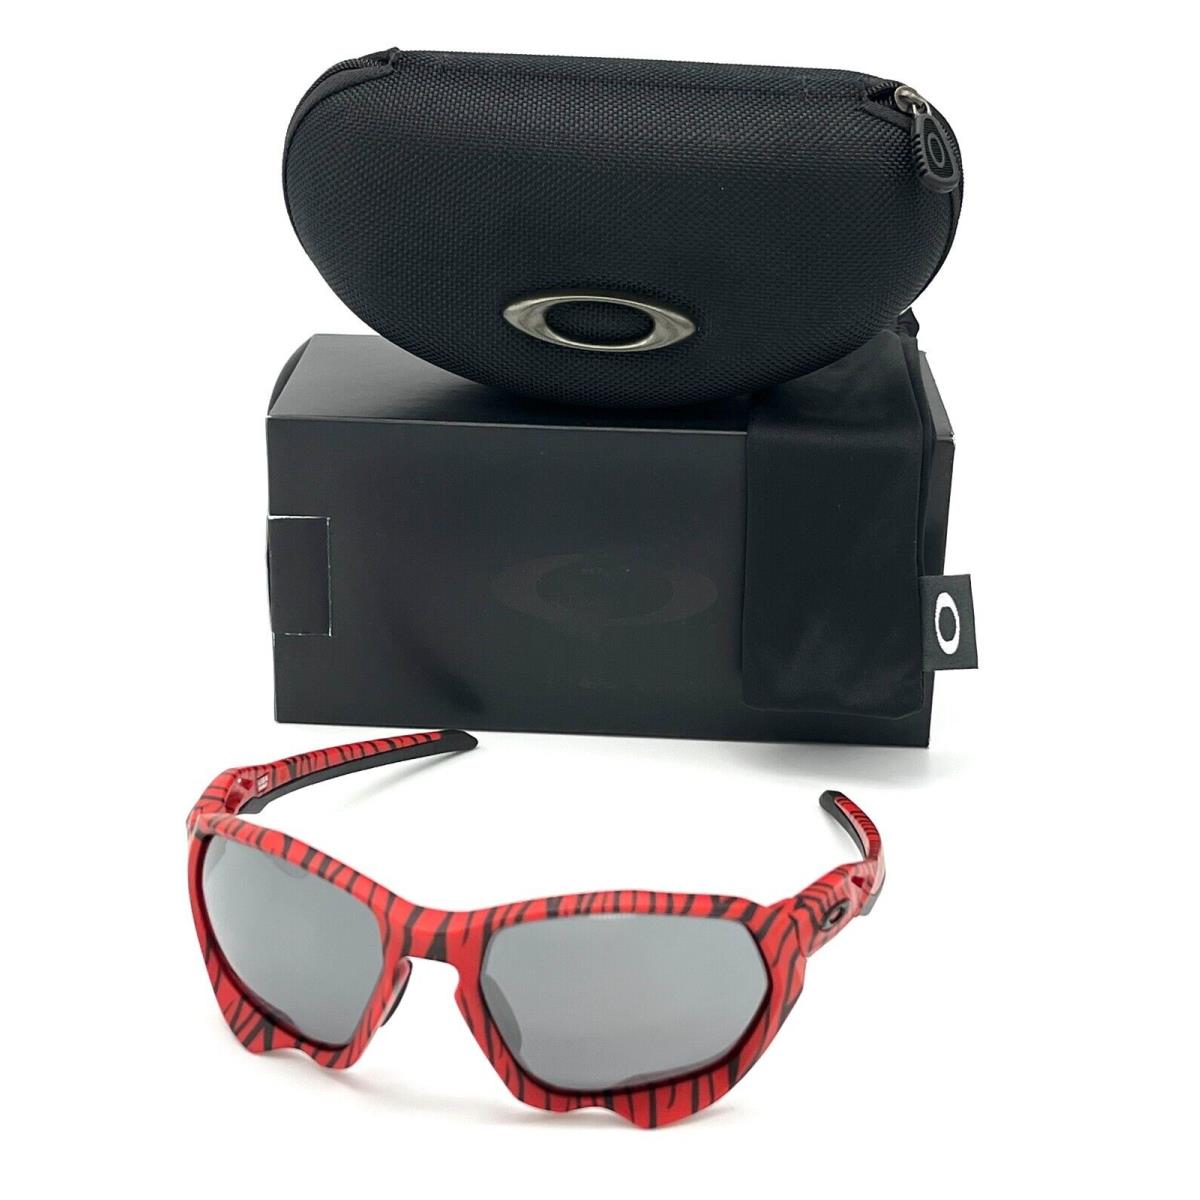 Oakley Plazma A OO9019-07 Red Tiger / Prizm Black 59mm Sunglasses - Frame: Red Tiger, Lens: Prizm Black